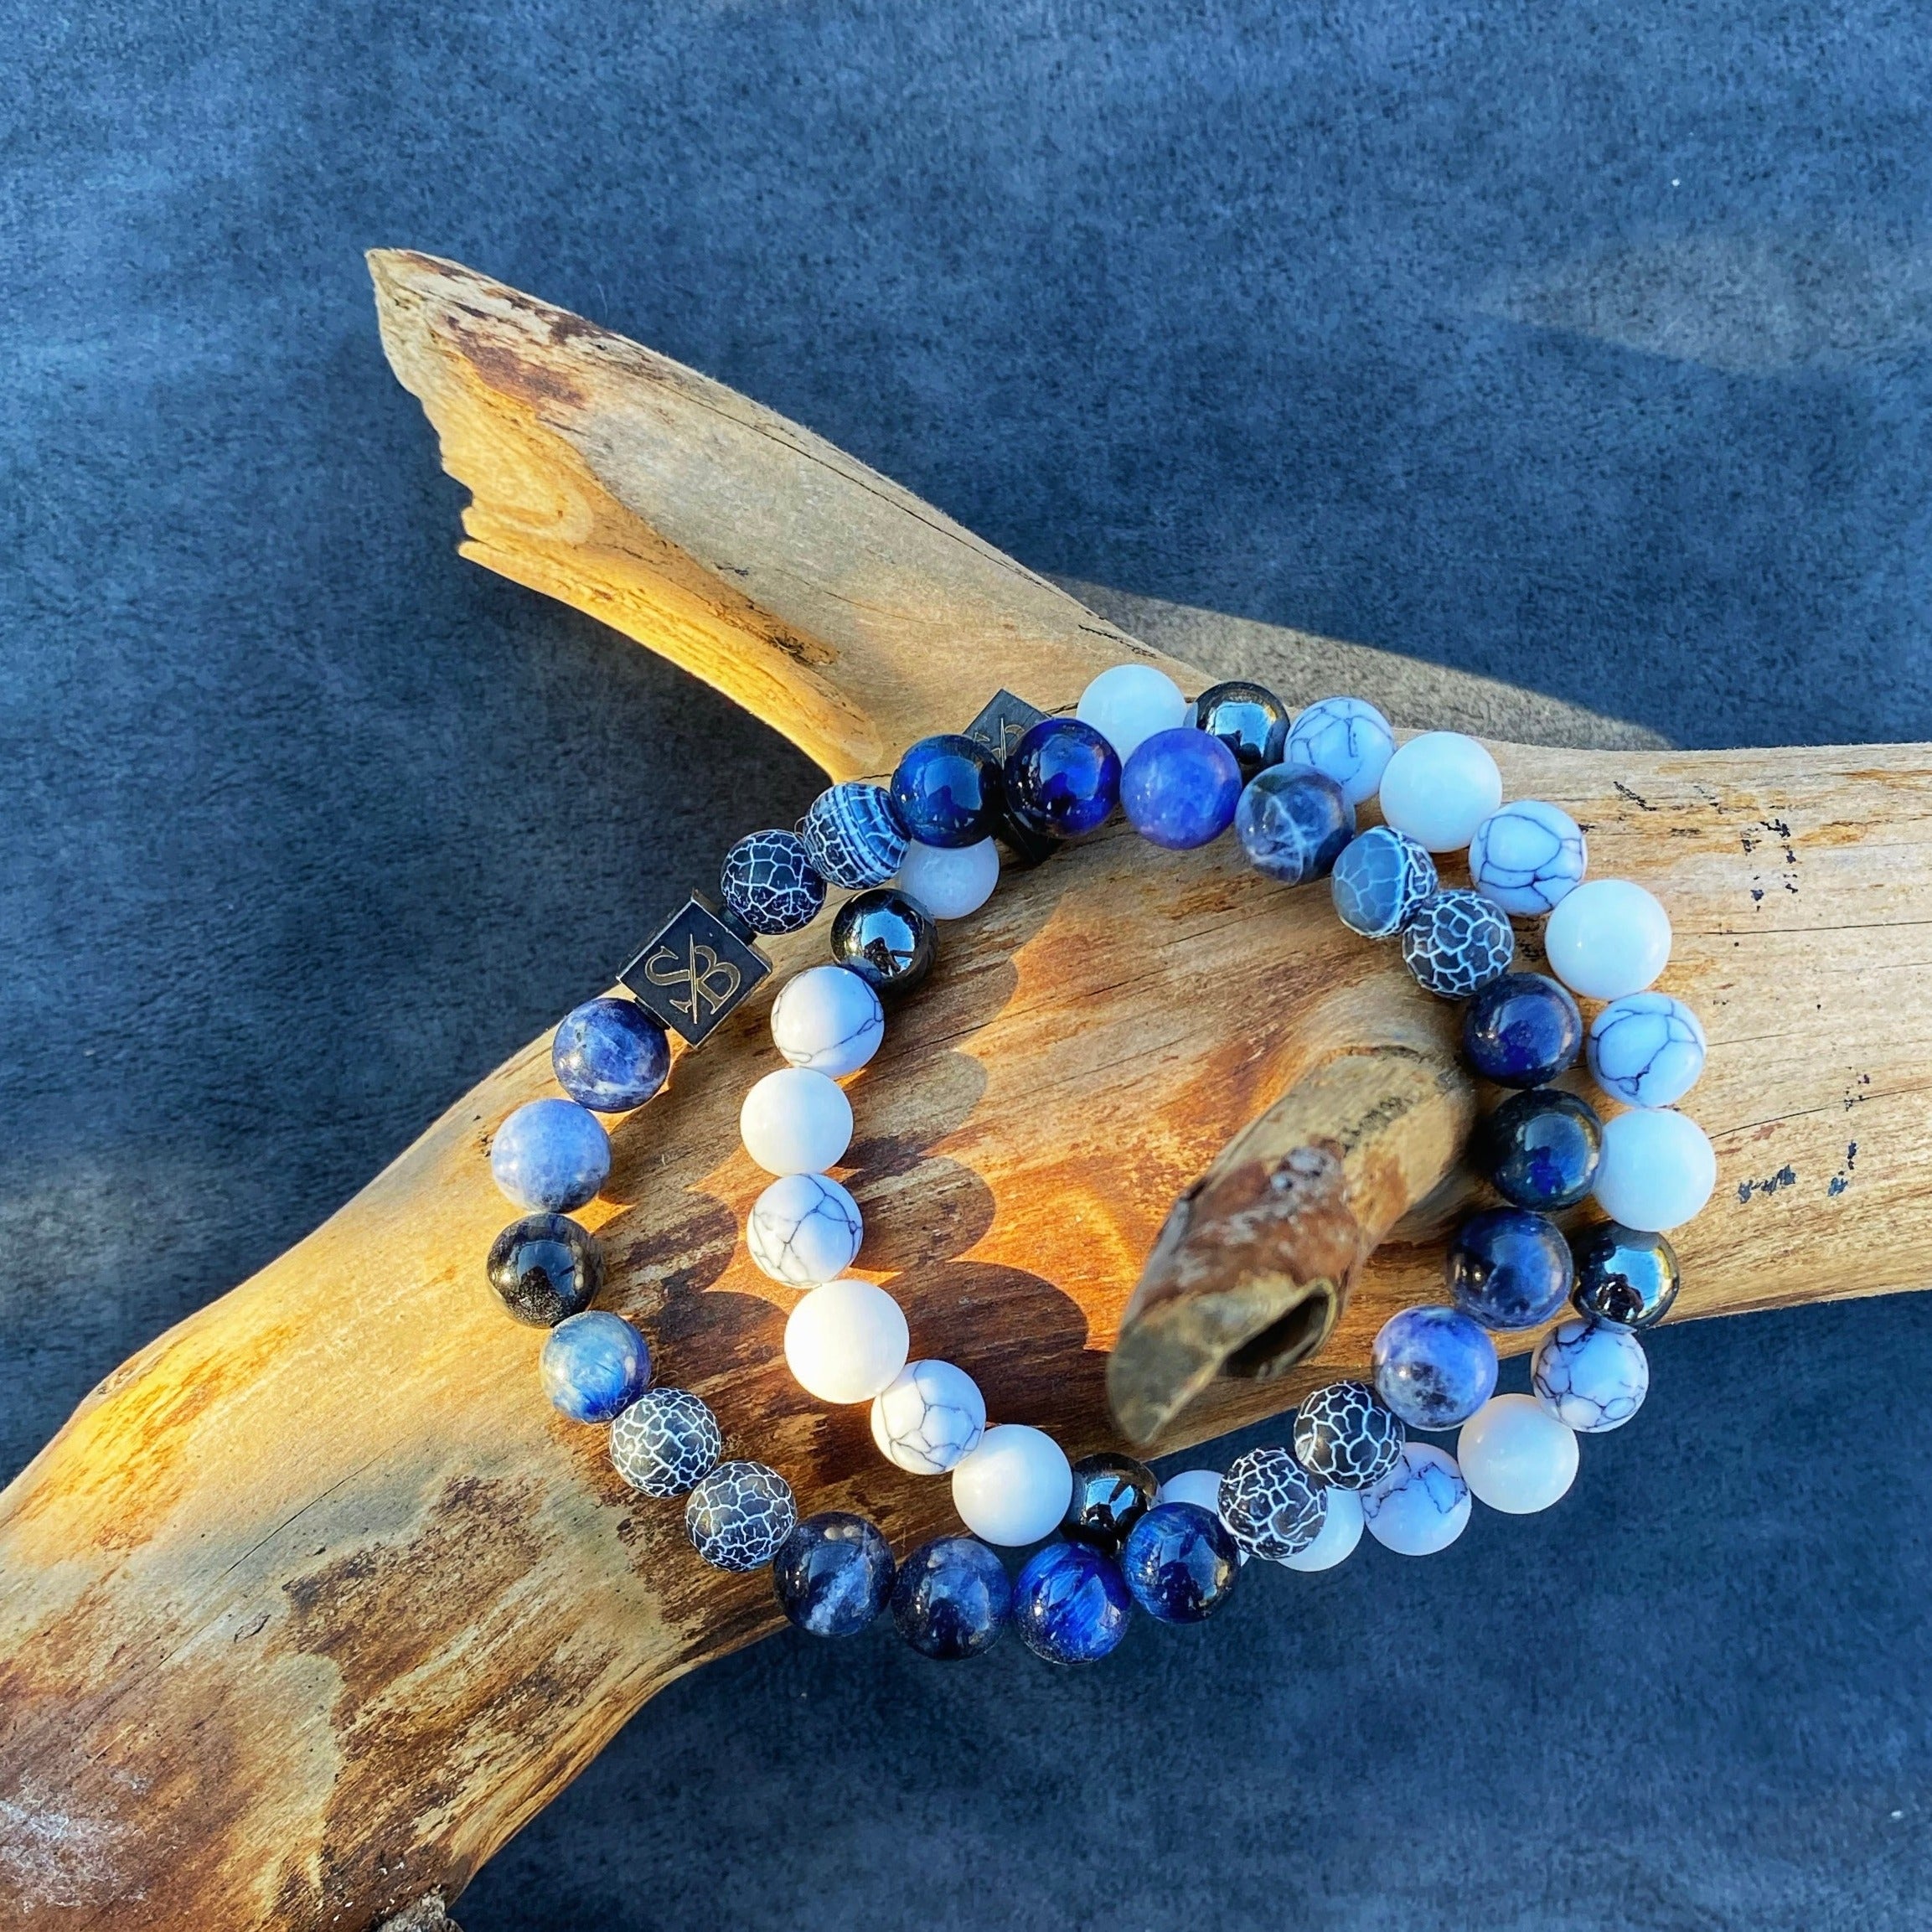 Twee Oceaan | Mixed Stones (8mm) armbanden met blauwe en witte kralen op een houten blok van Stoney Bracelets.